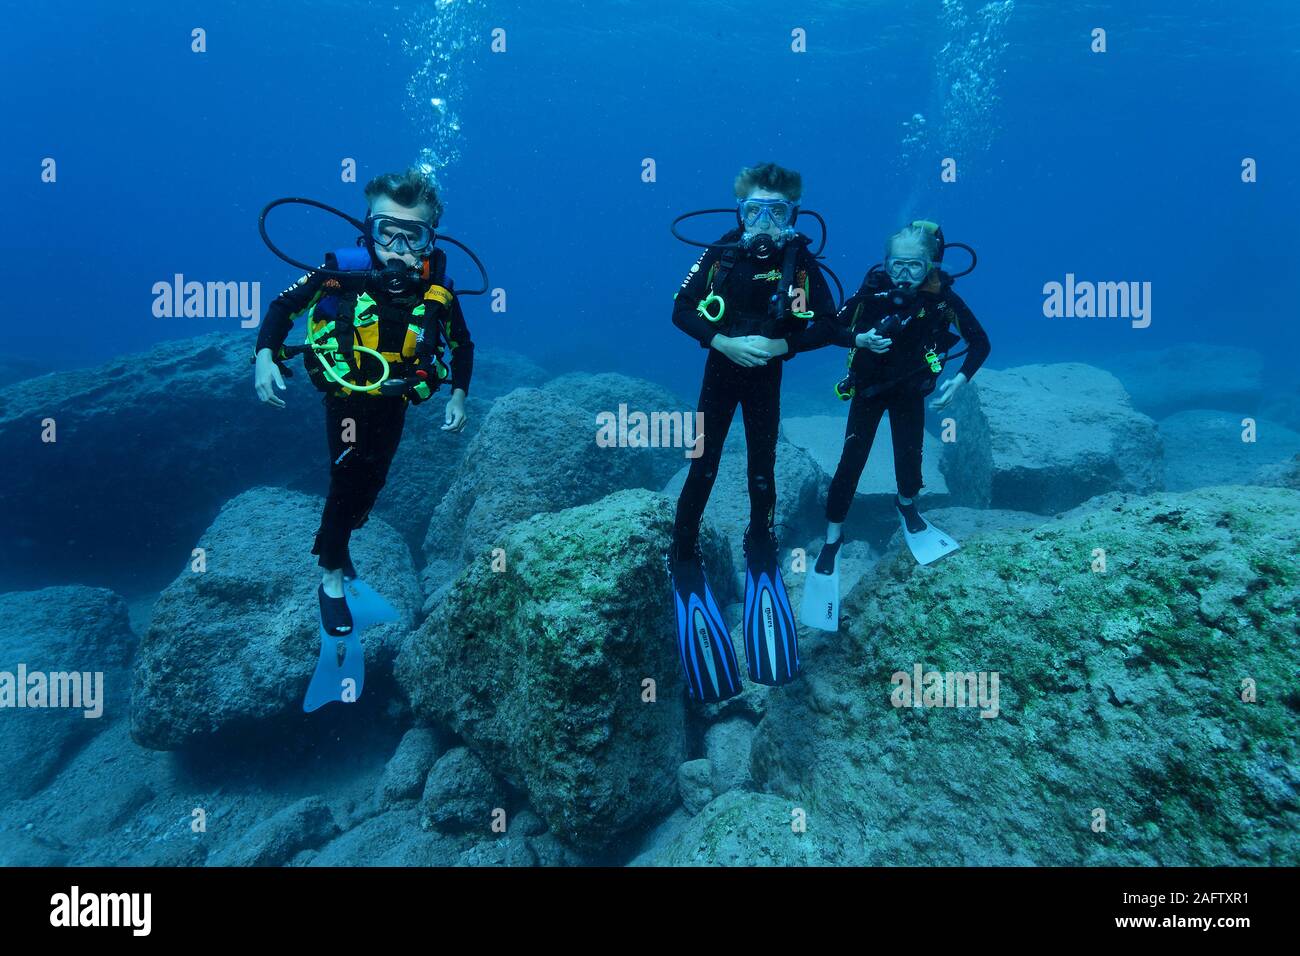 Los niños Discover Scuba diving en un arrecife rocoso, isla de Zakynthos, Grecia Foto de stock